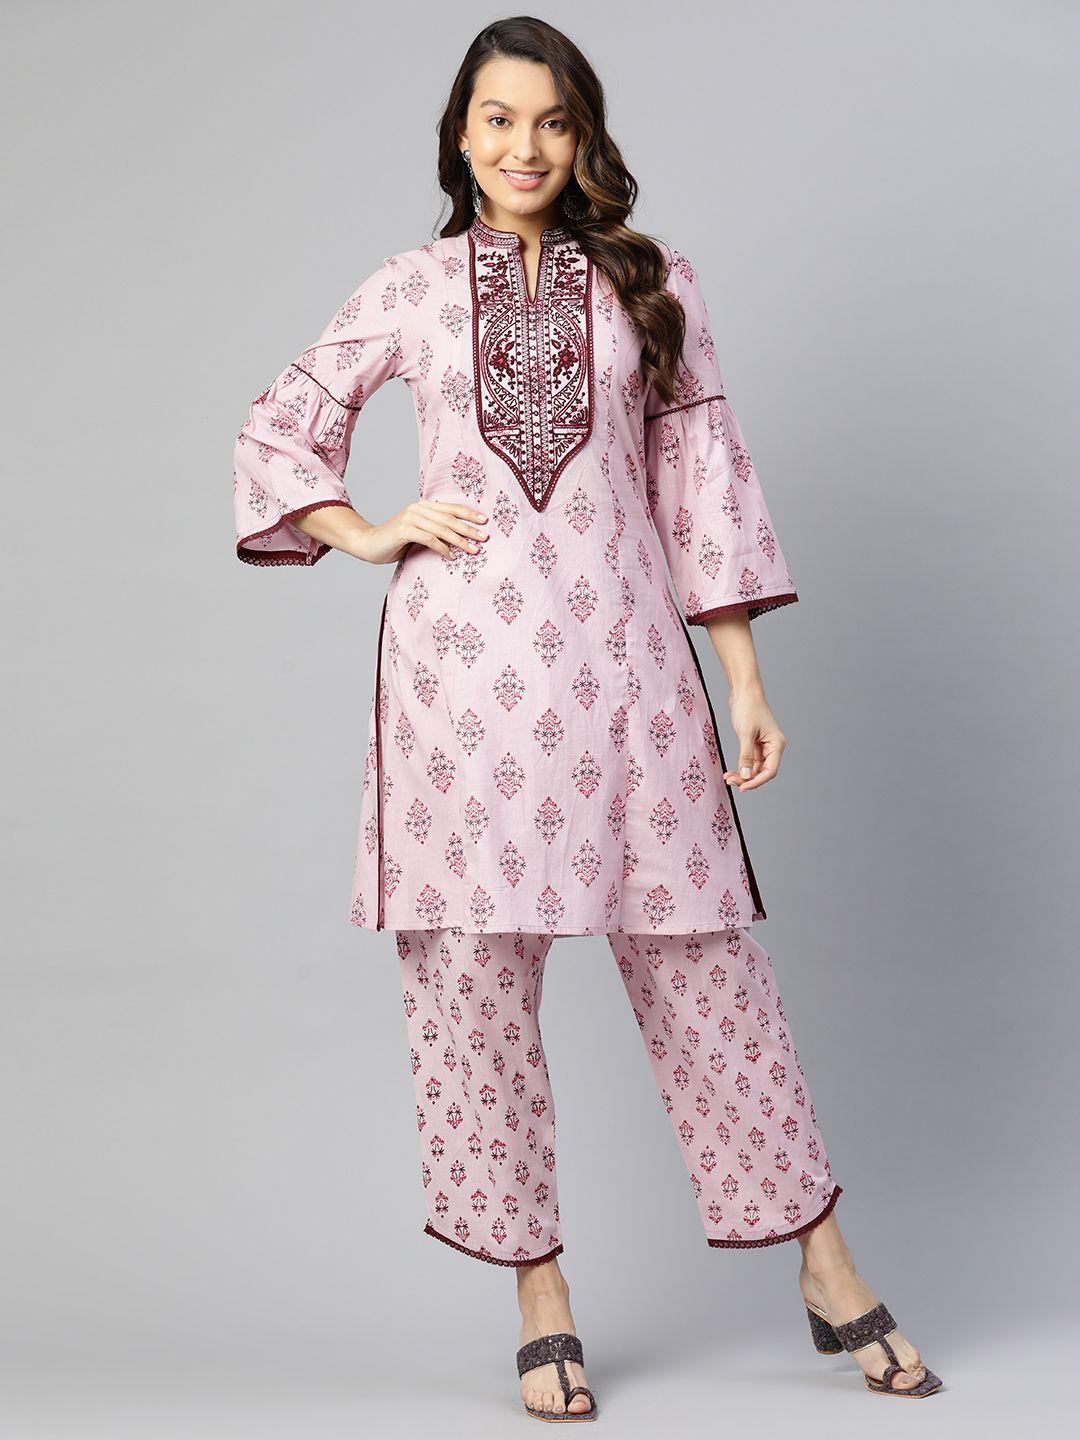 nayam by lakshita embroidered printed pure cotton tunic & palazzos set